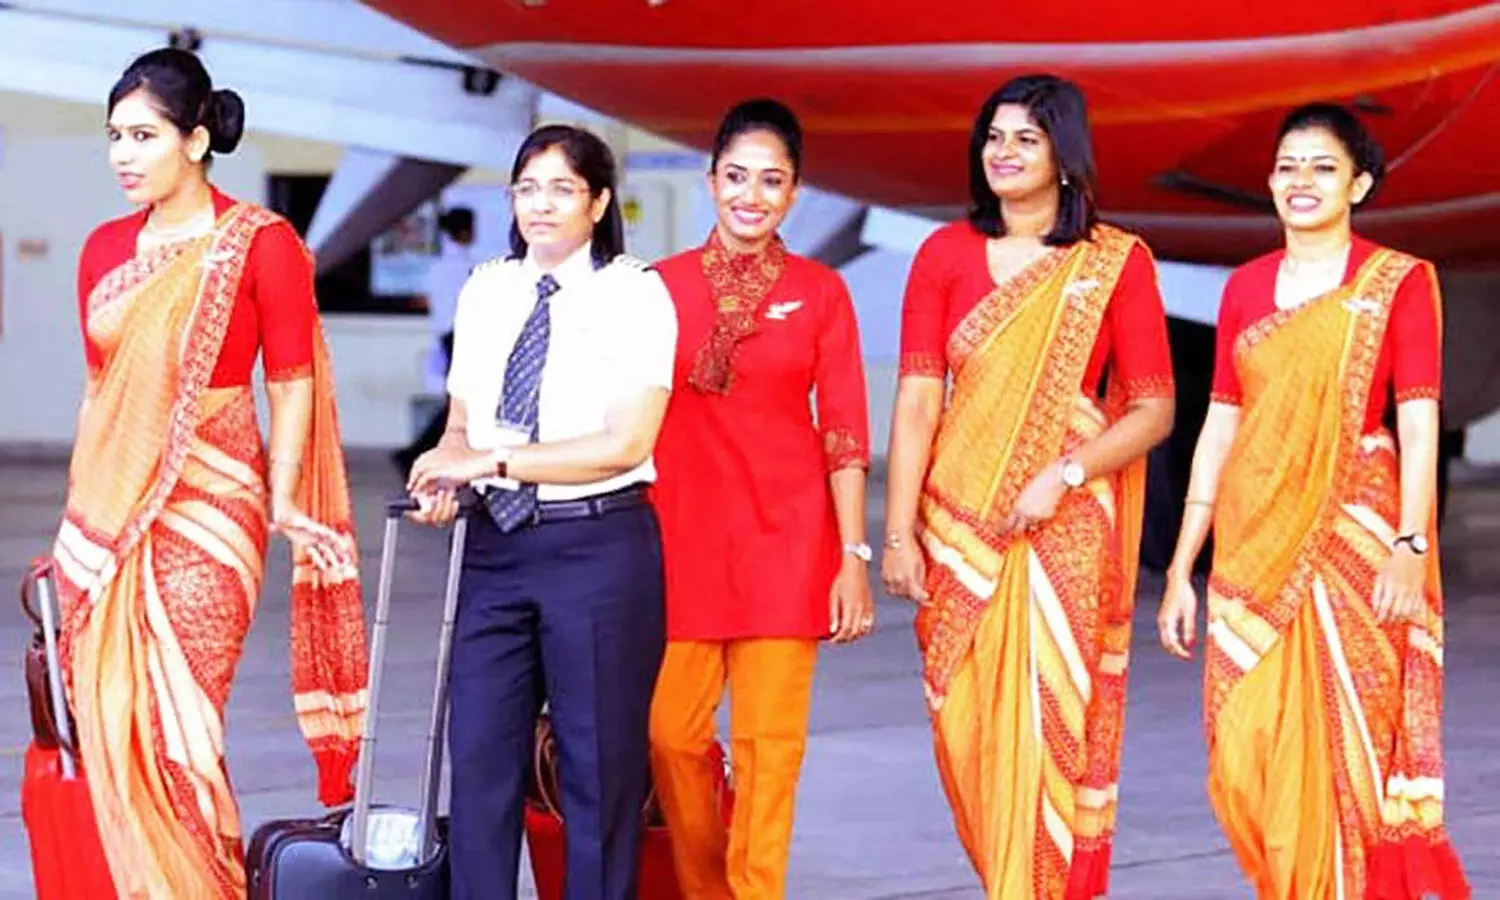 Air India Guide Lines News: एअर इंडिया क्रू मेंबर्स नए लुक में नजर आएंगे, जारी हुई गाइड लाइन